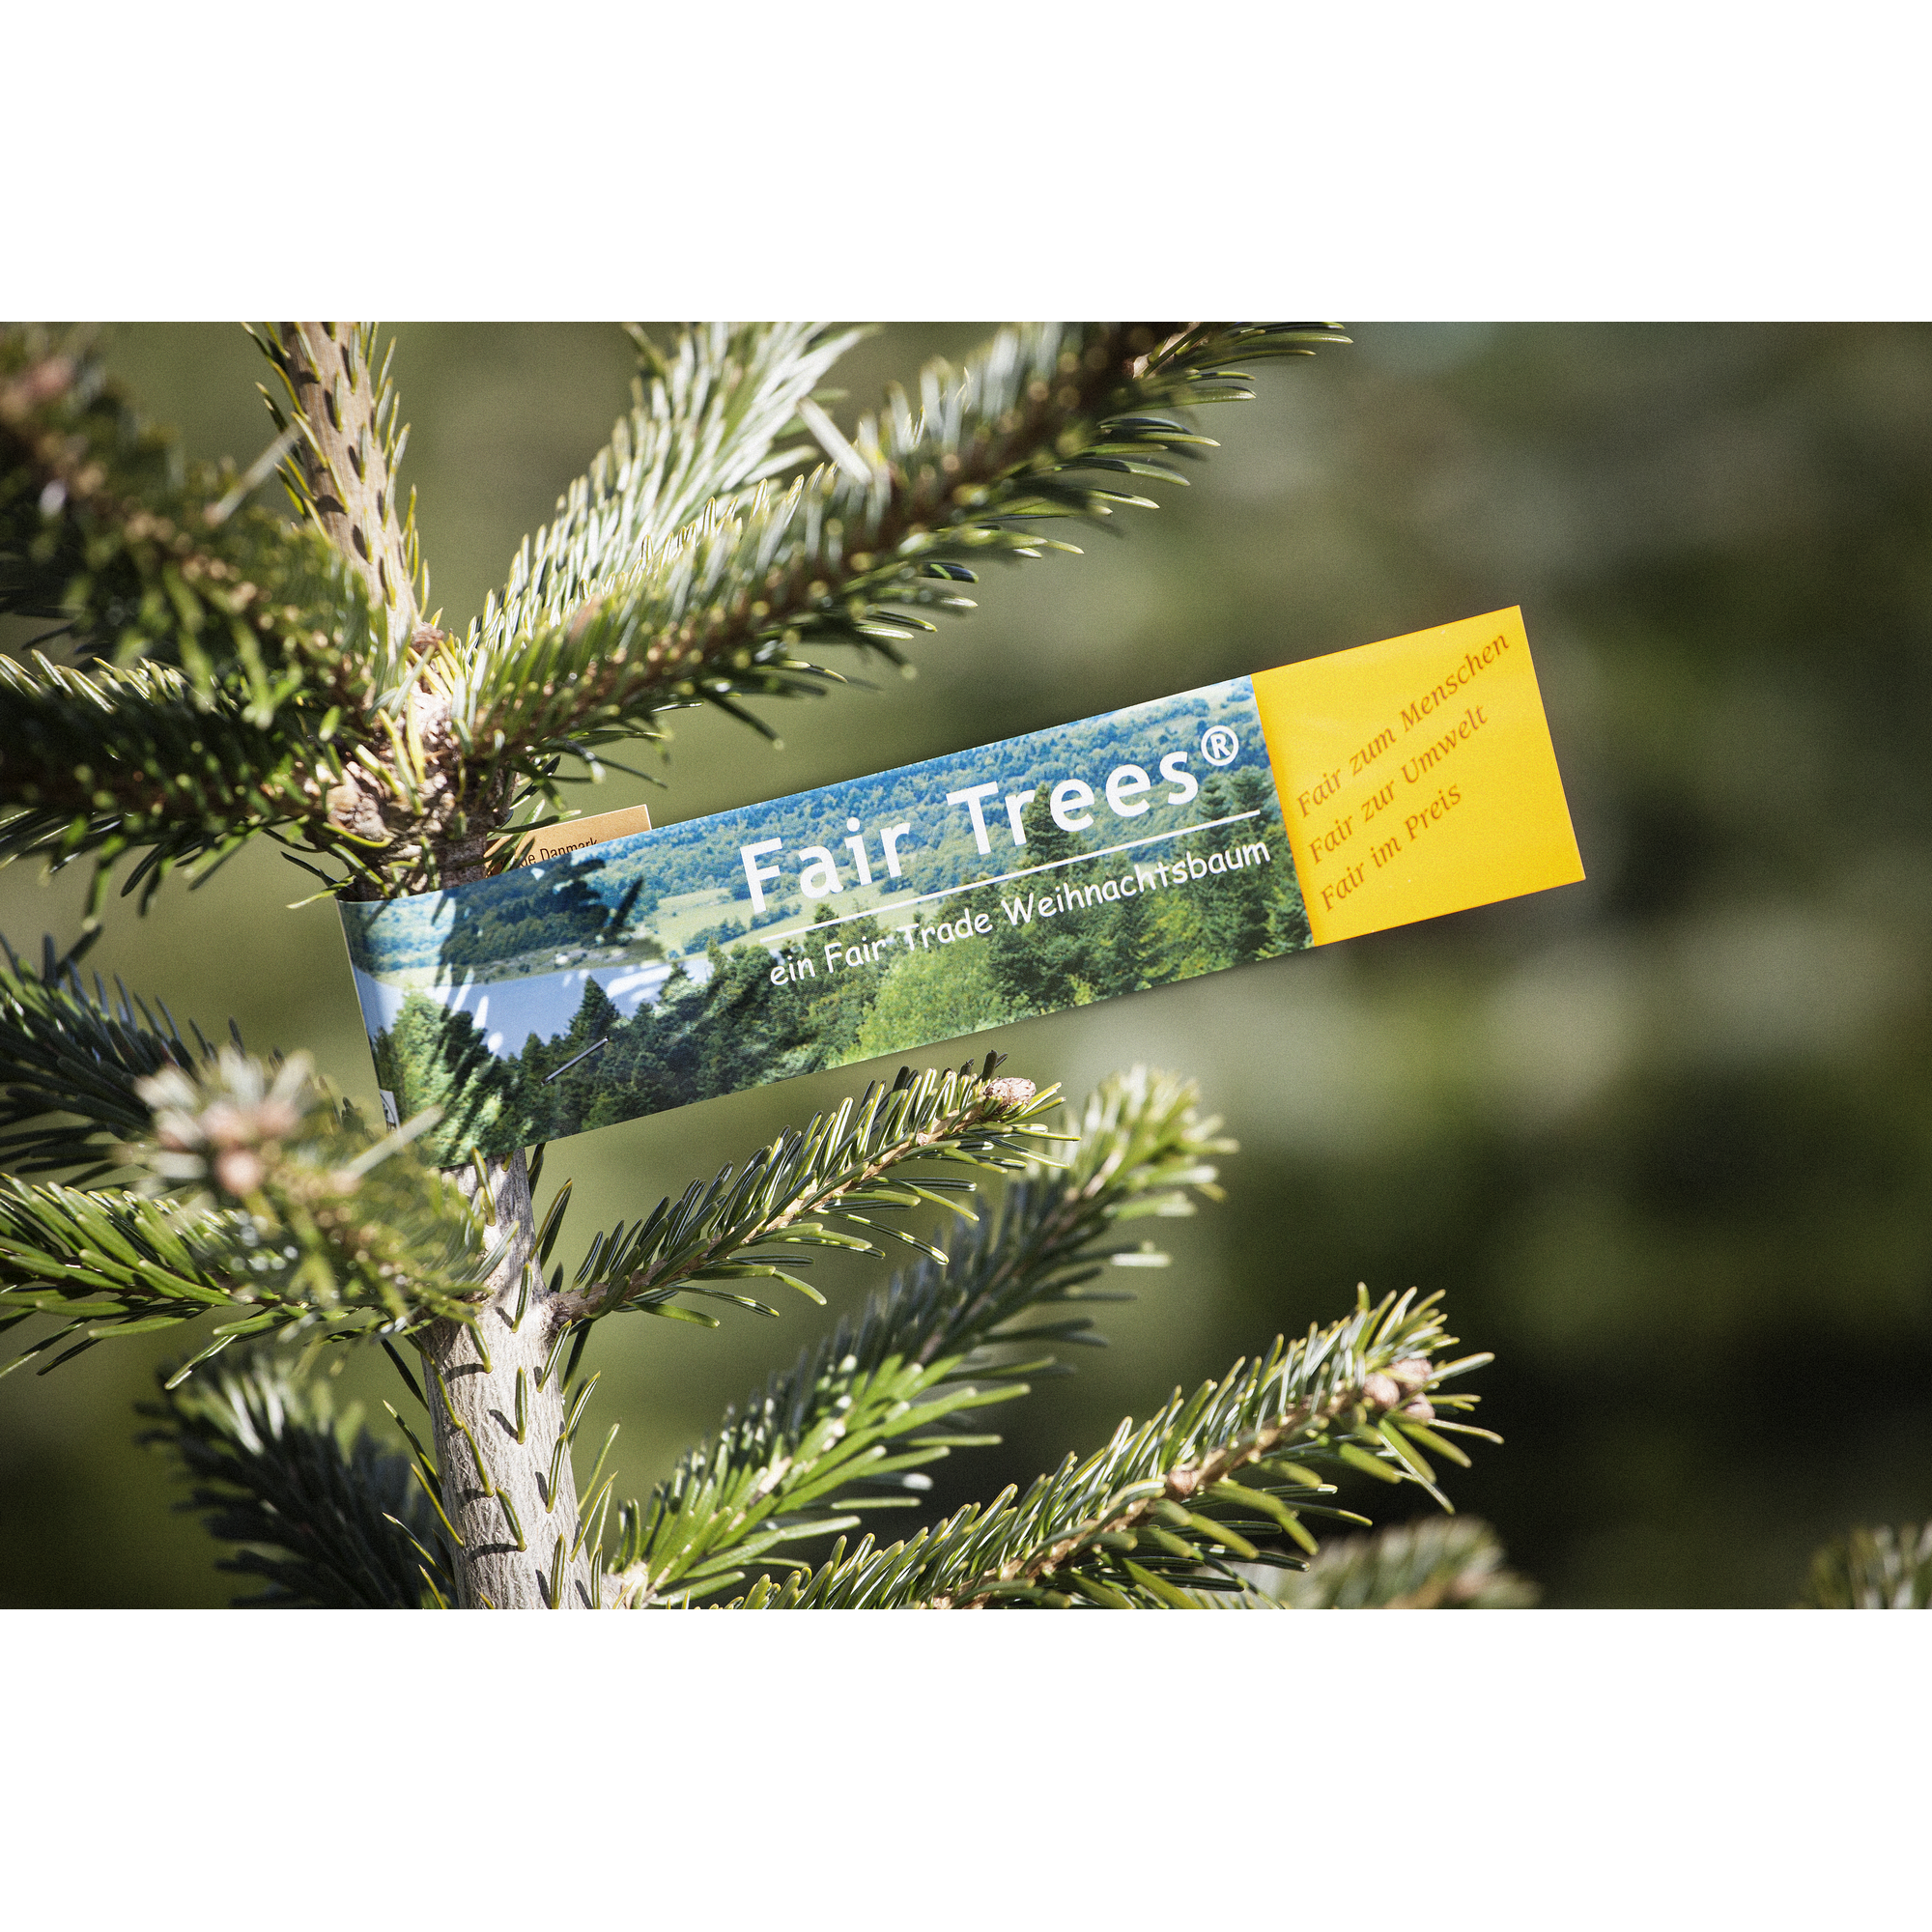 Fair Trees® Weihnachtsbaum Nordmanntanne topfgewachsen 80-100 cm + product picture